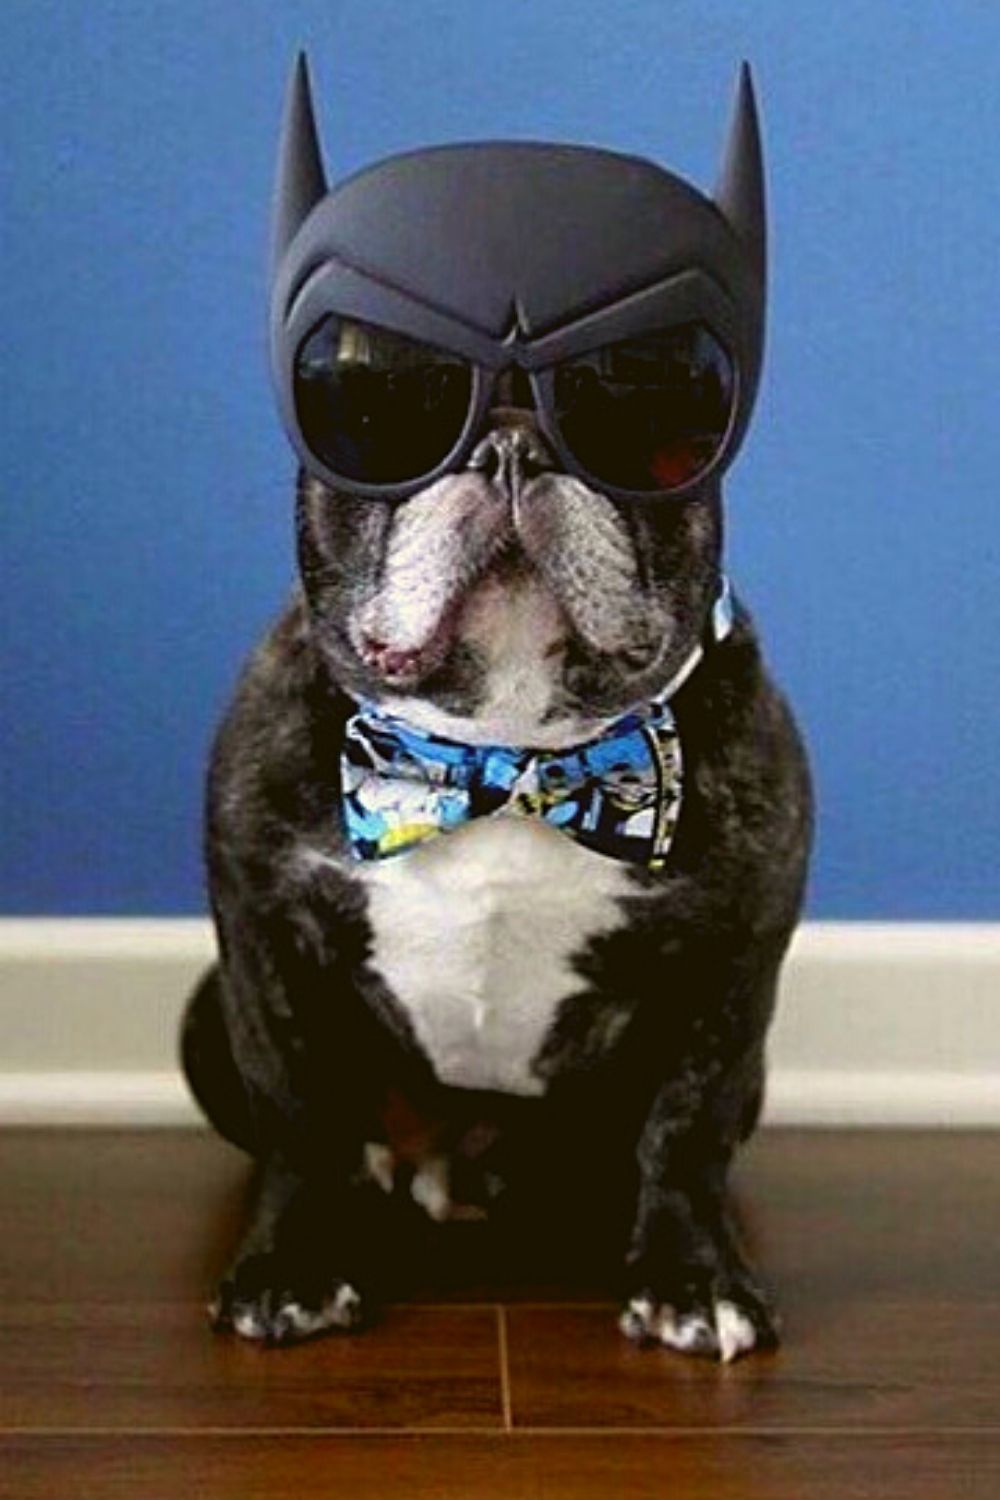 Batman costume for dog.